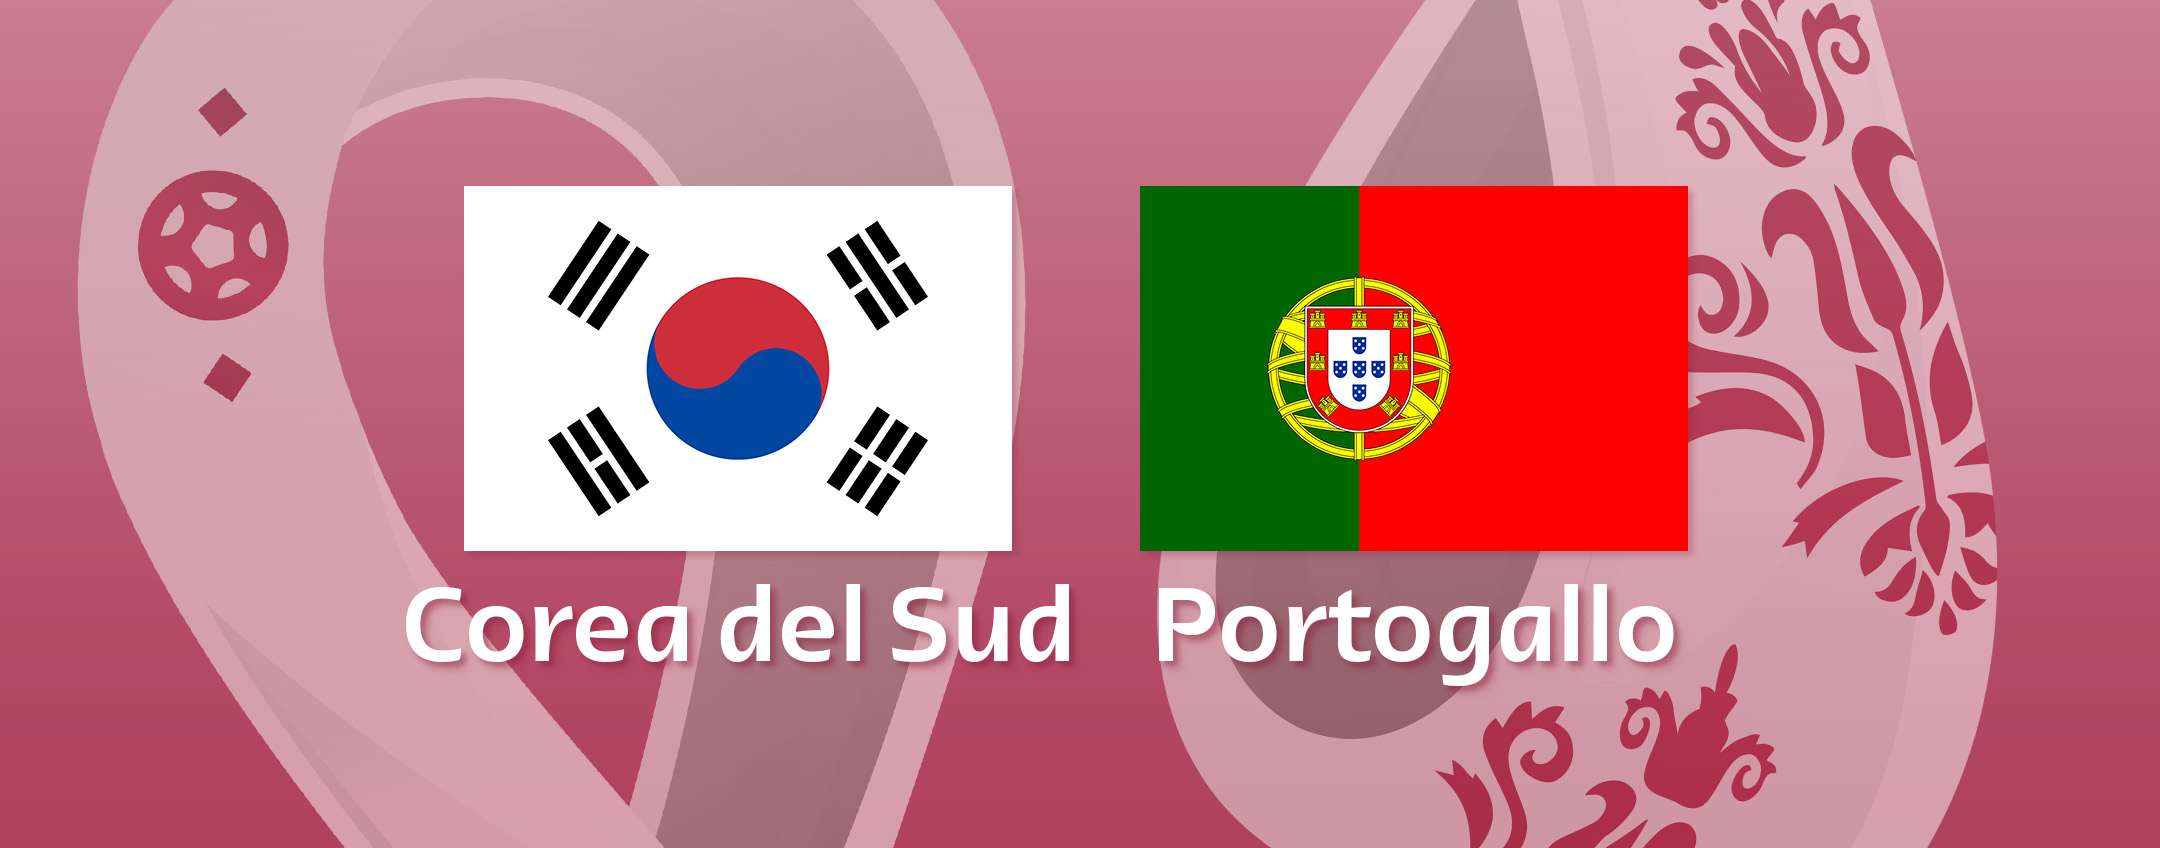 Como assistir à transmissão ao vivo Coreia do Sul-Portugal